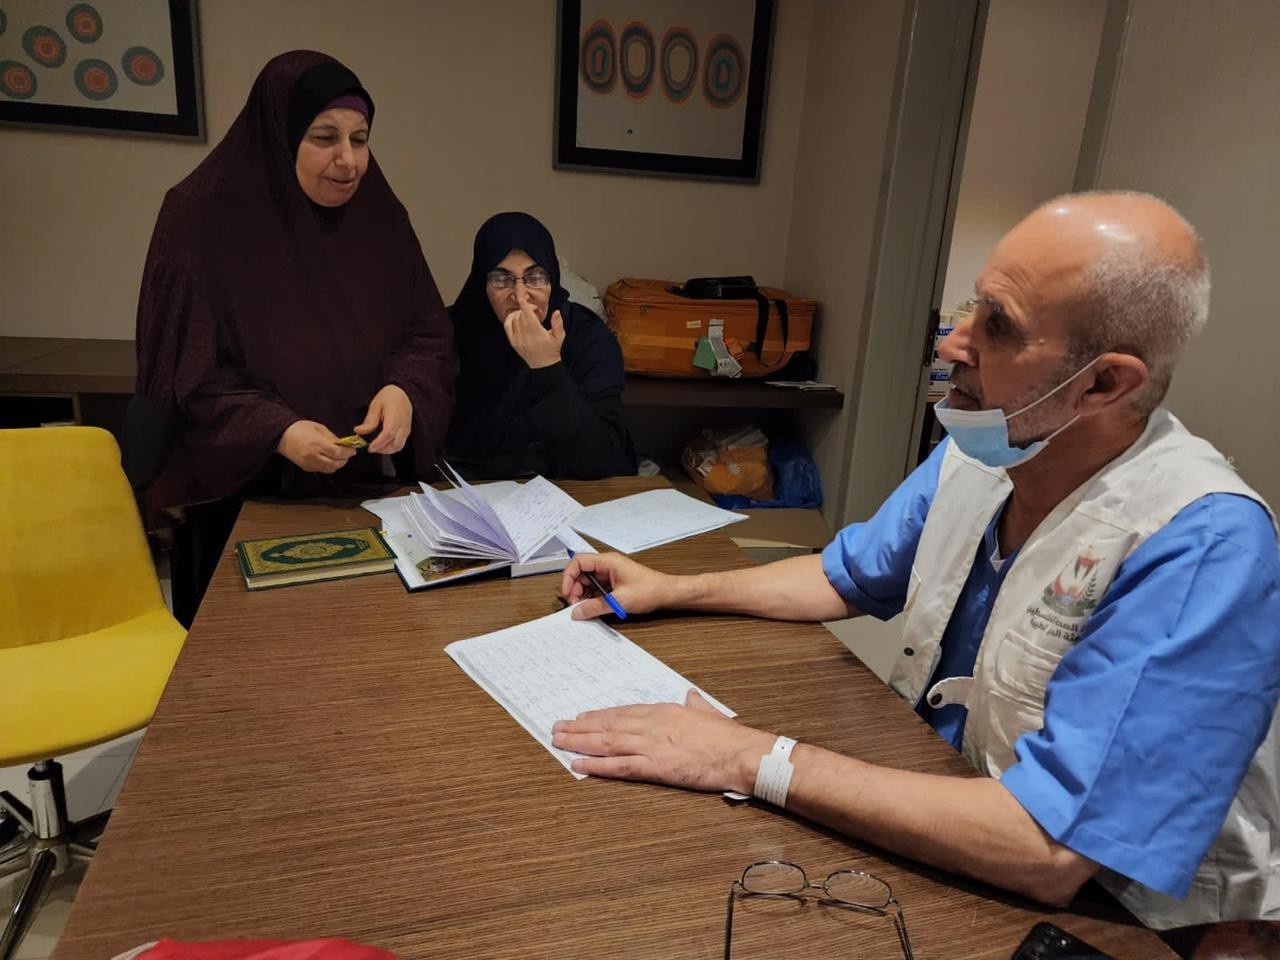 بالصور: تجهيز عيادة طبية للتعامل مع الحالات المرضية لحجاج فلسطين